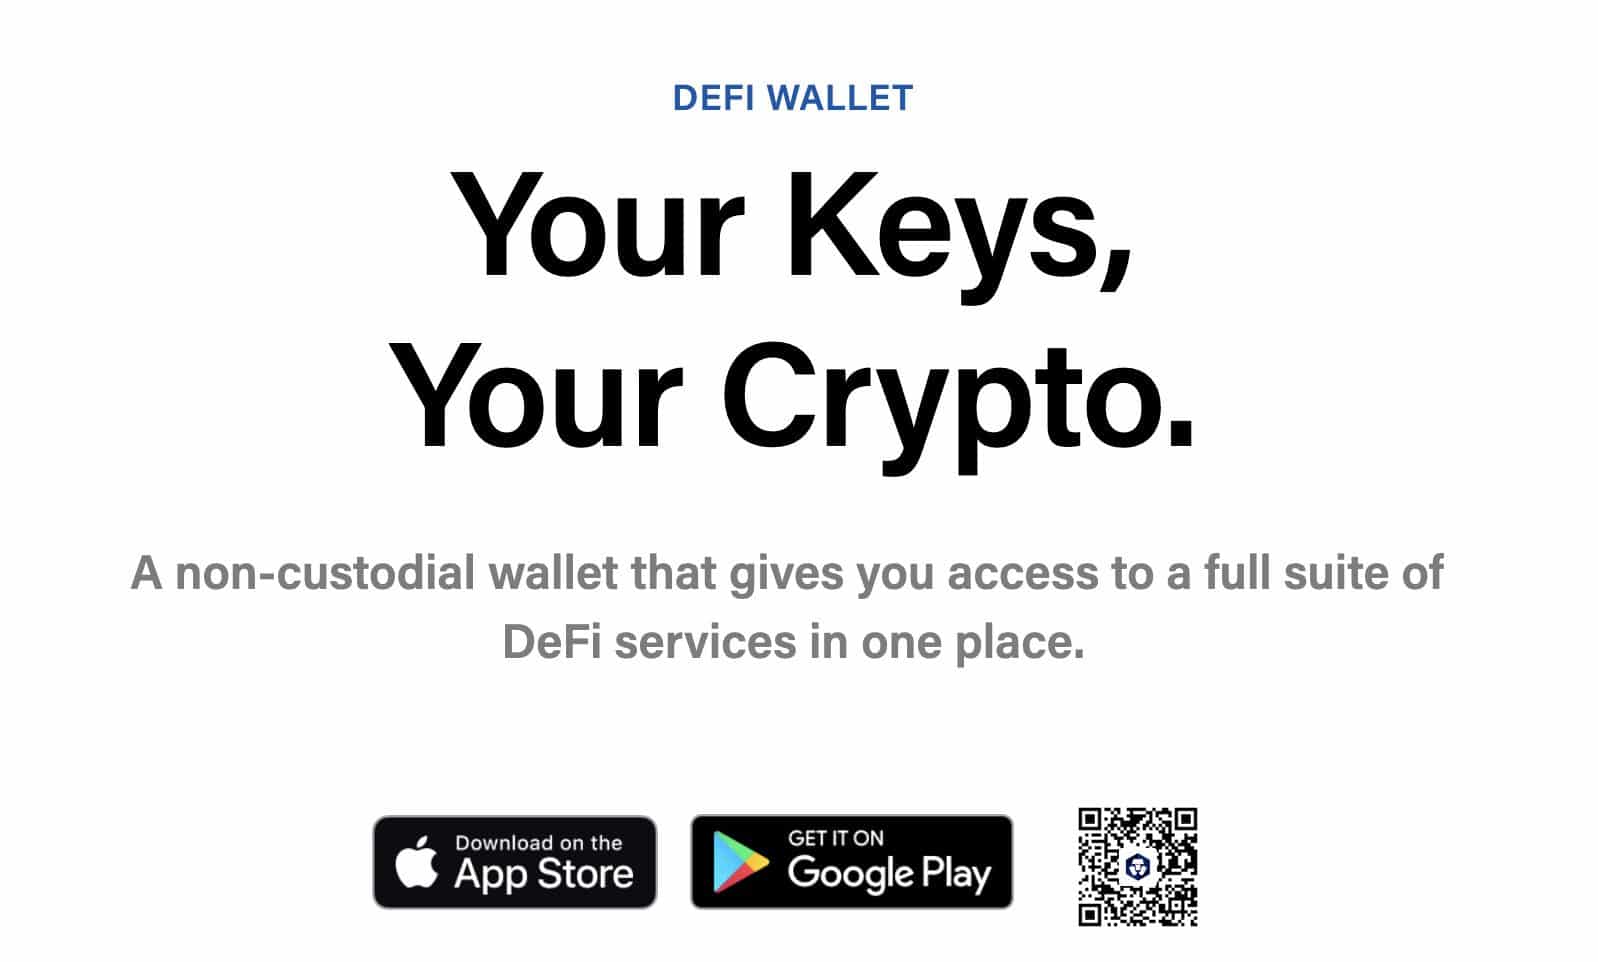 Crypto.com 